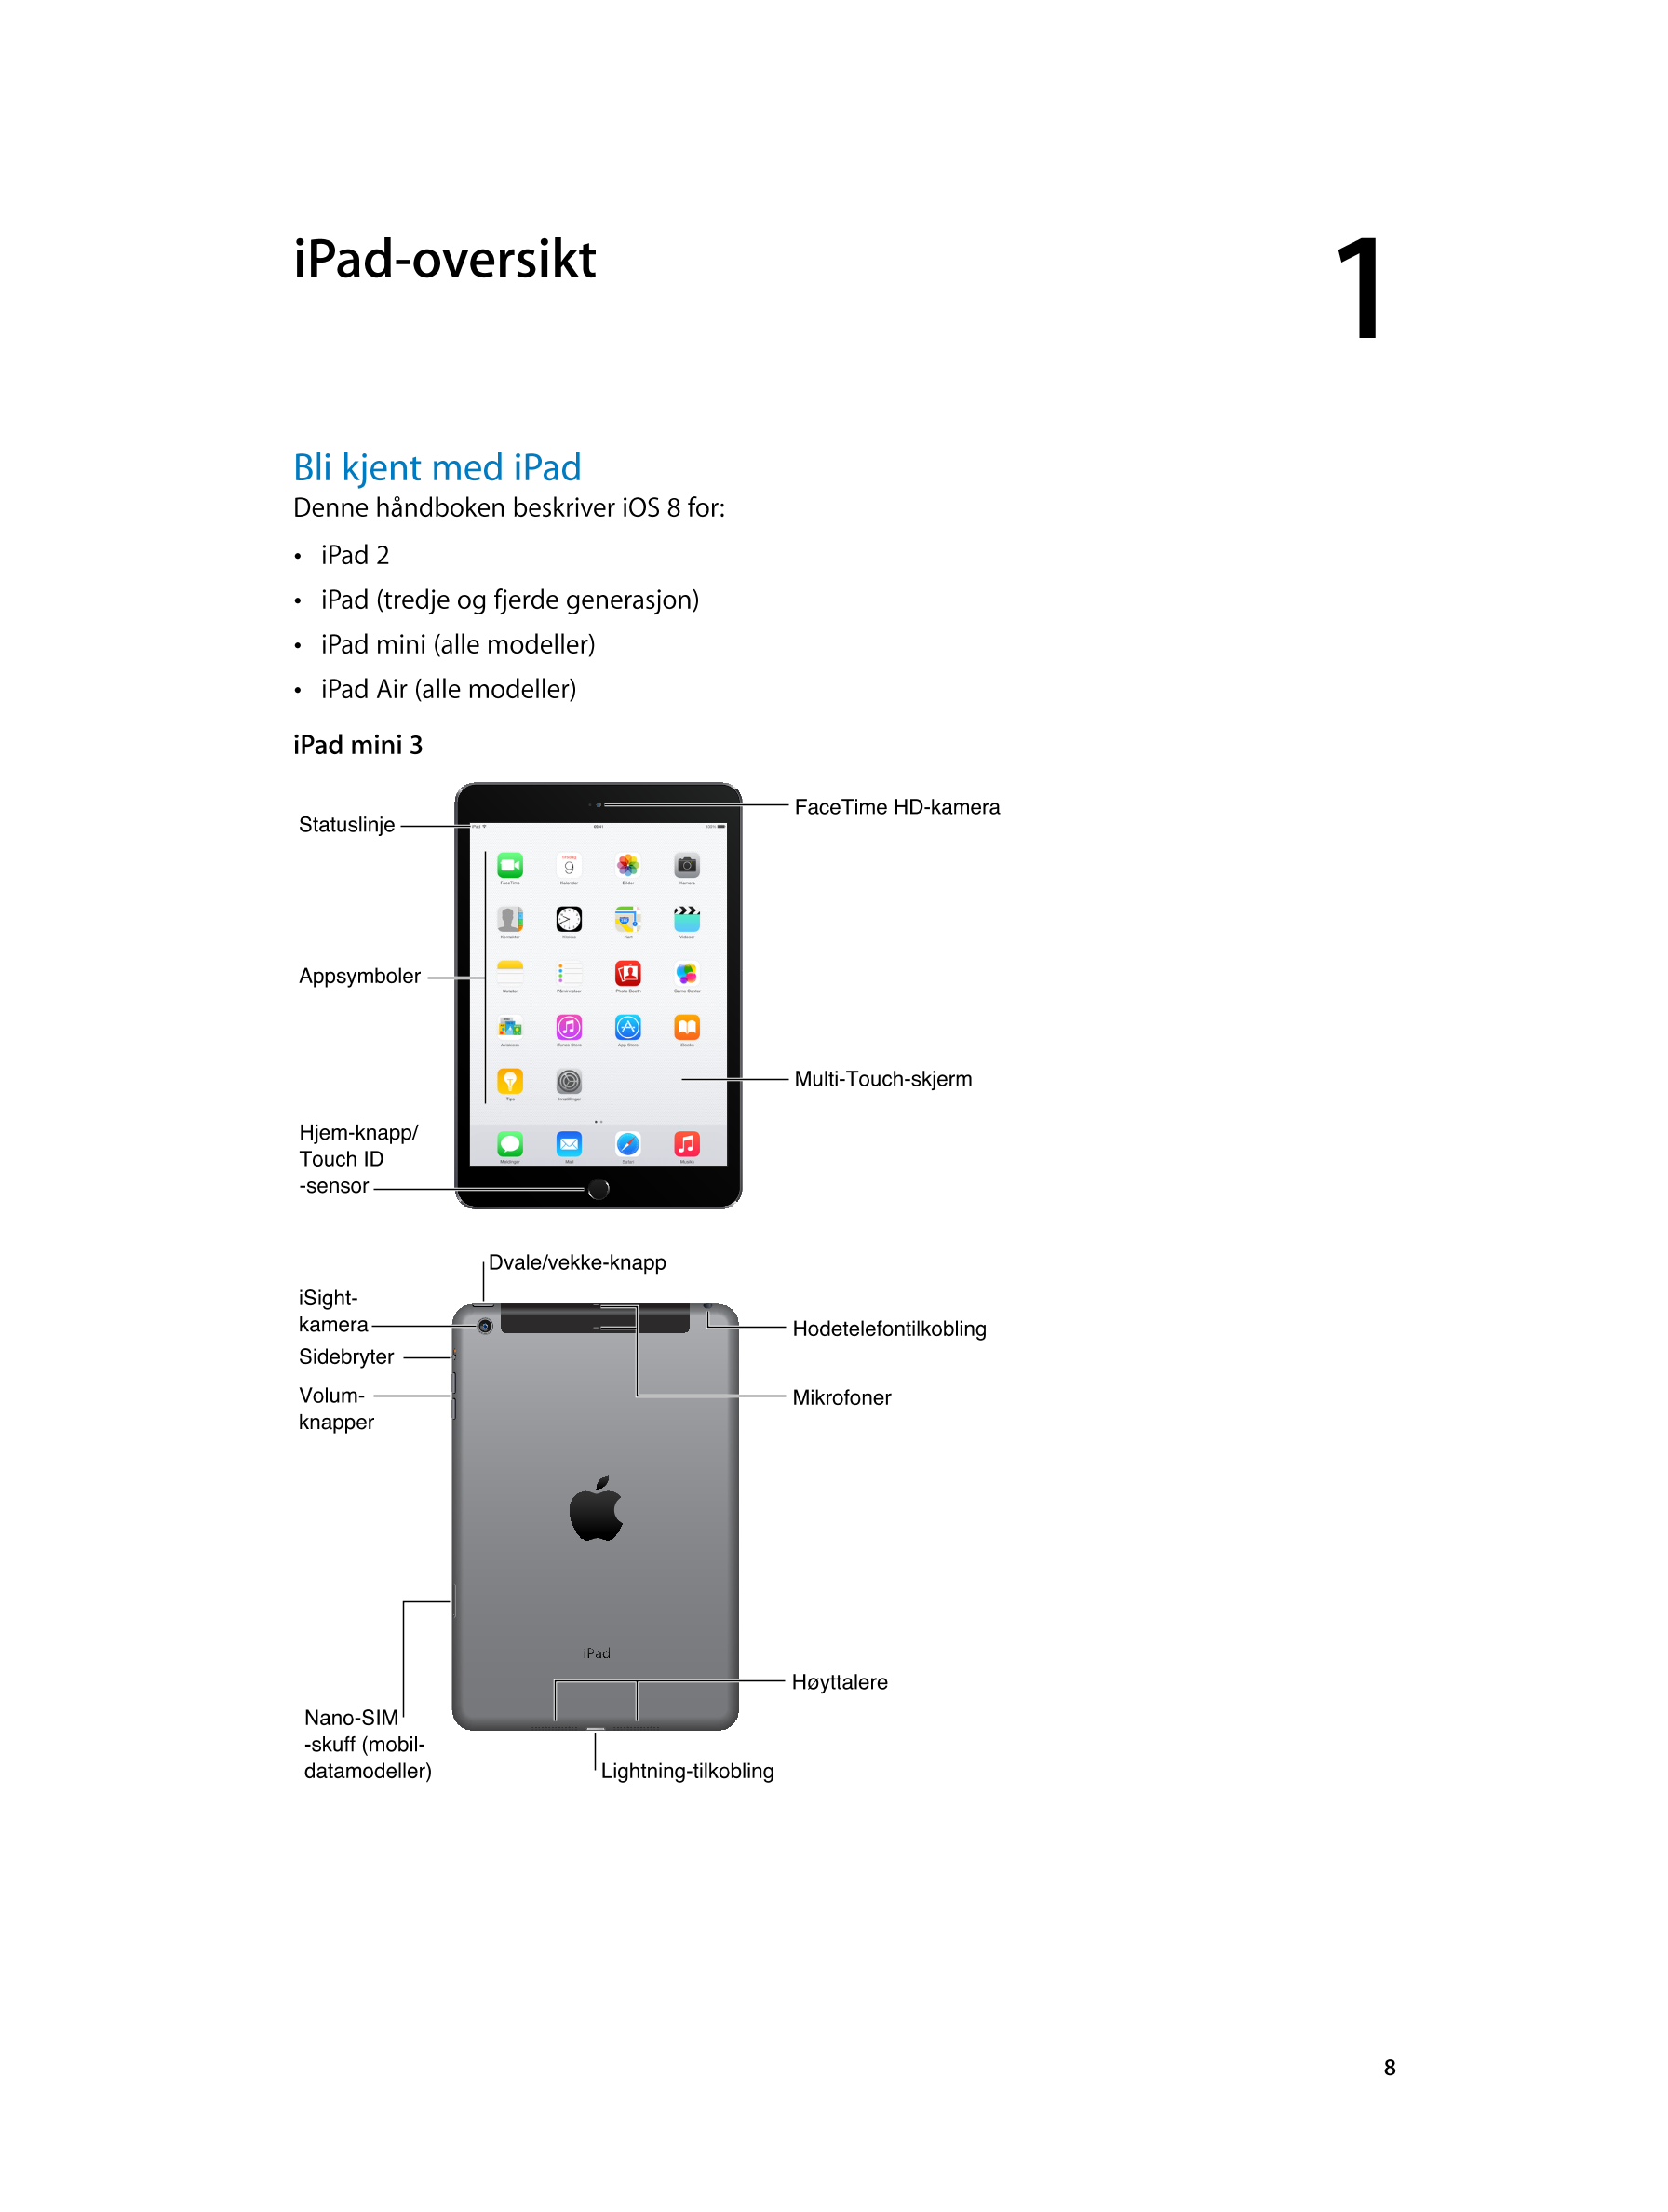   iPad-oversikt 1         
Bli kjent med iPad
Denne håndboken beskriver iOS 8 for: 
•  iPad  2
•  iPad (tredje og fjerde generas